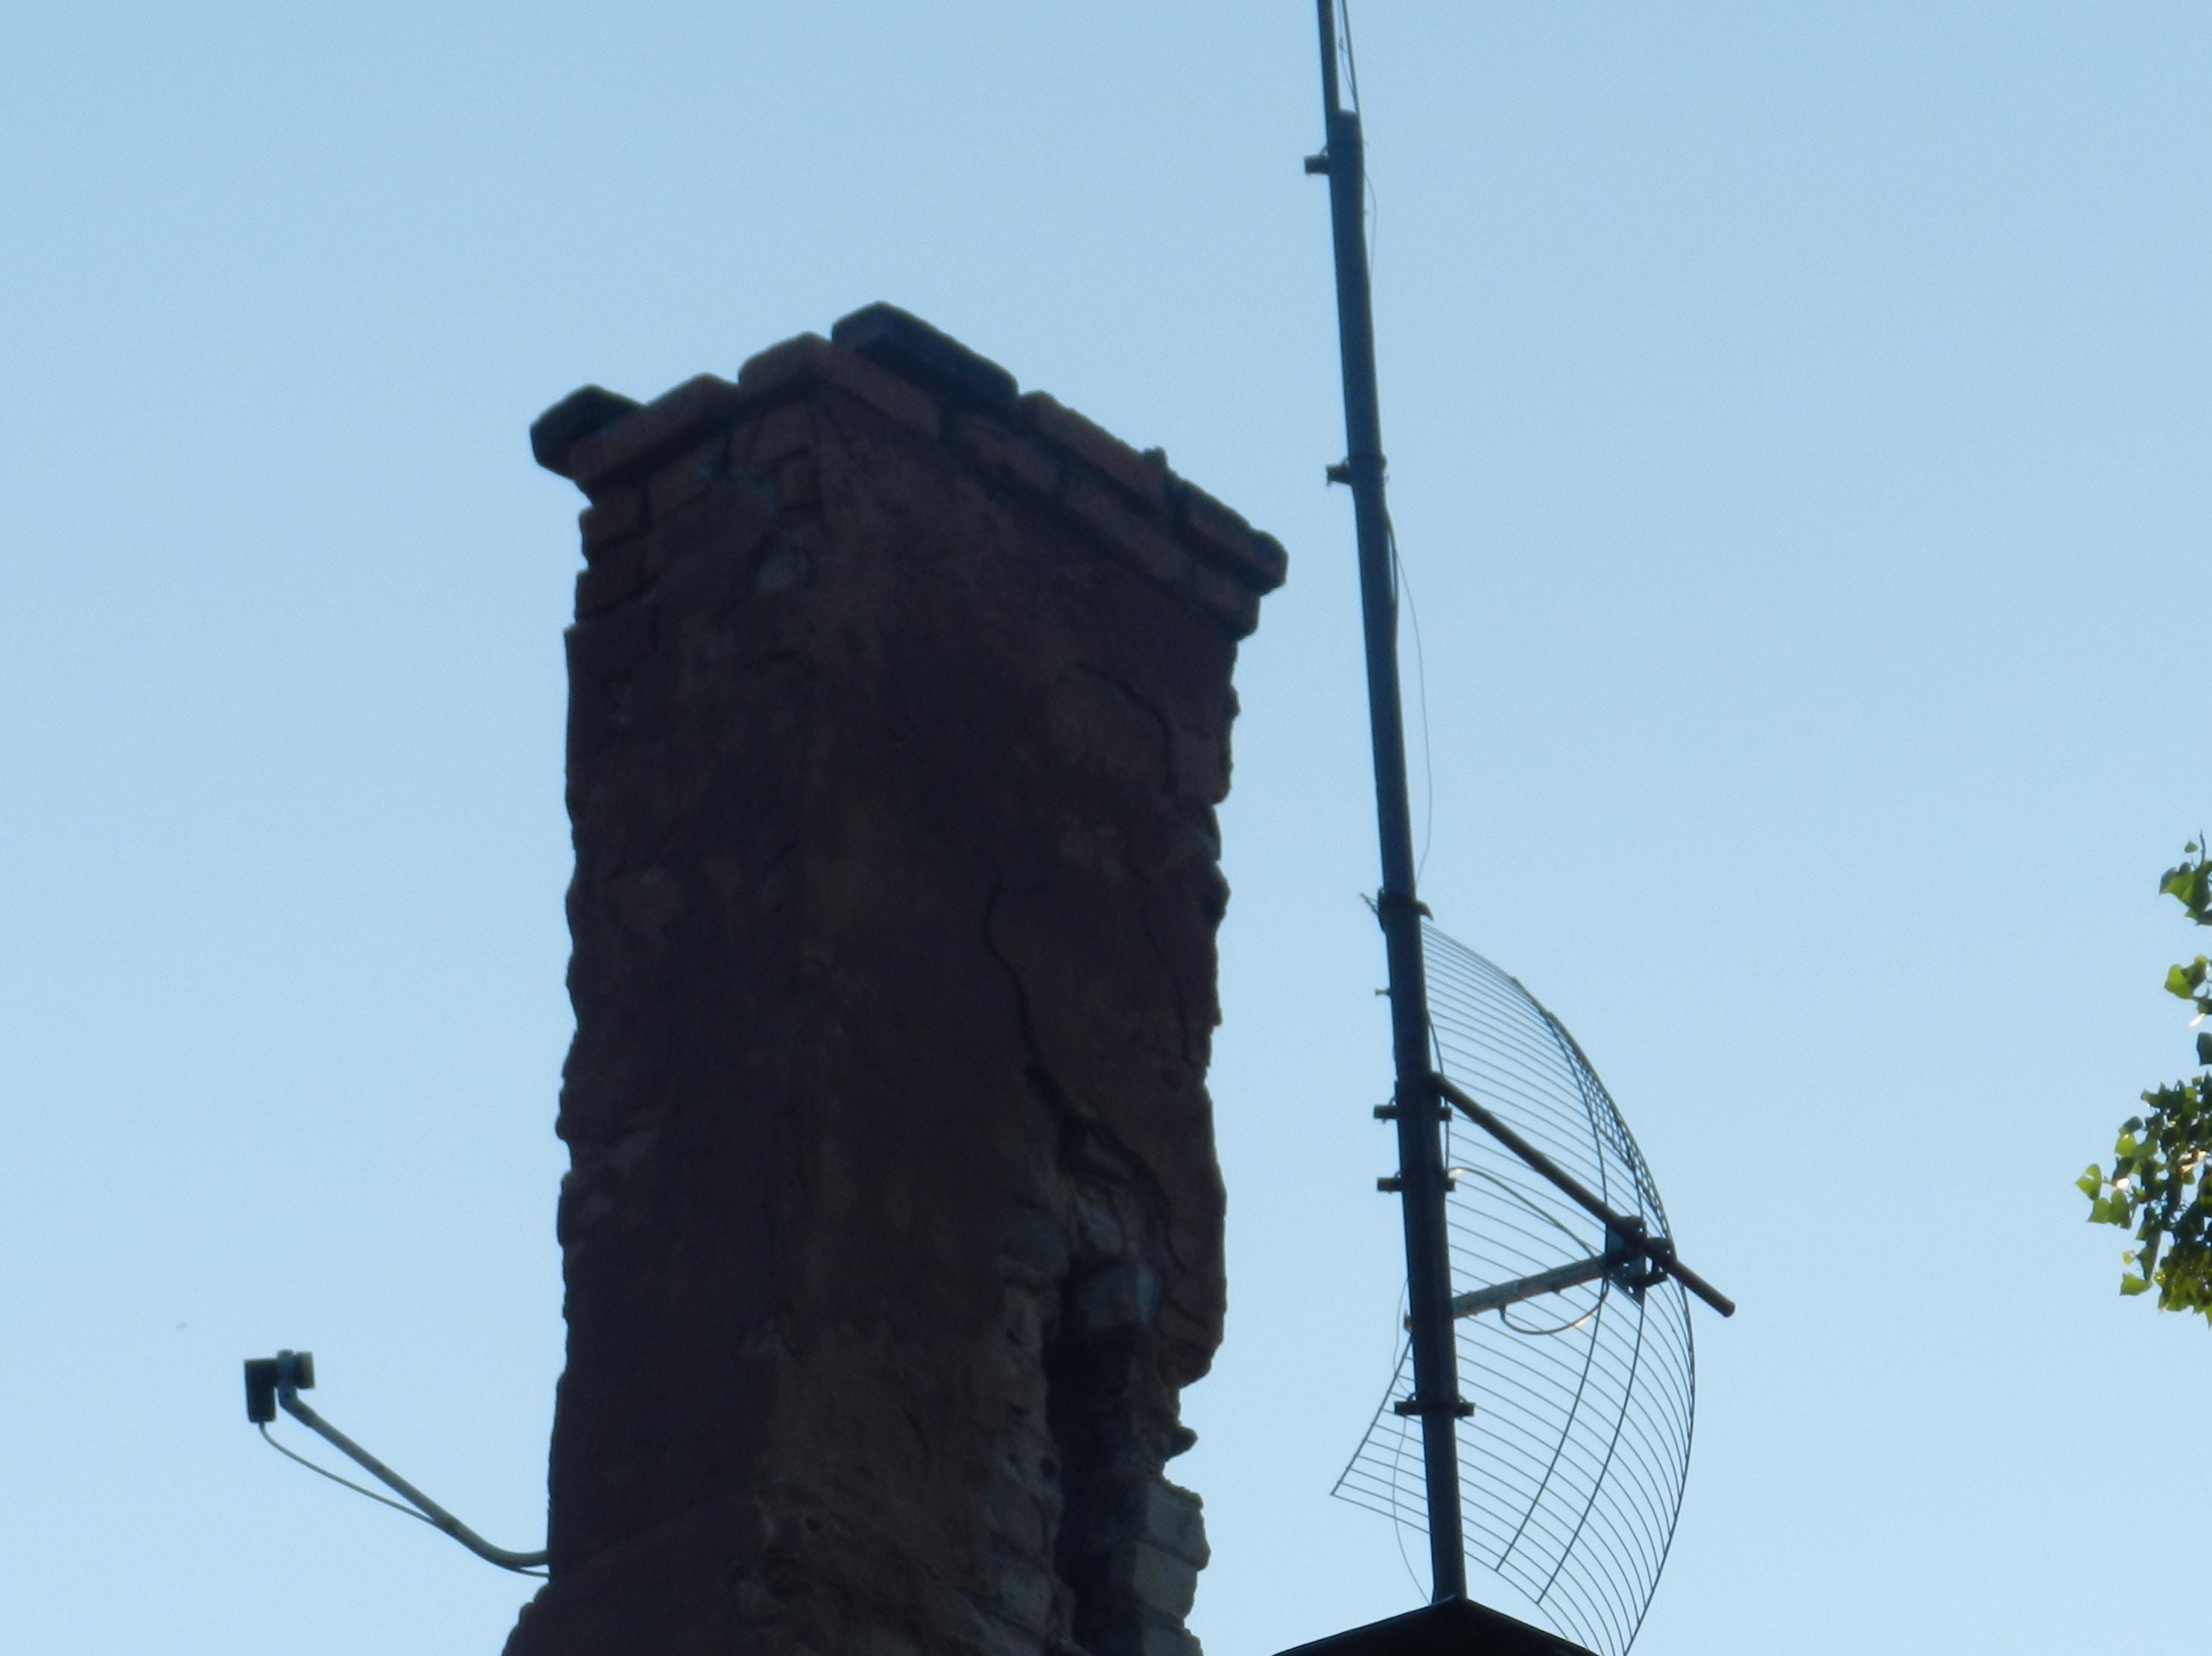 Разрушенный дымоход. Волгоград, август 2018 года. Фото Татьяны Филимоновой для "Кавказского узла"